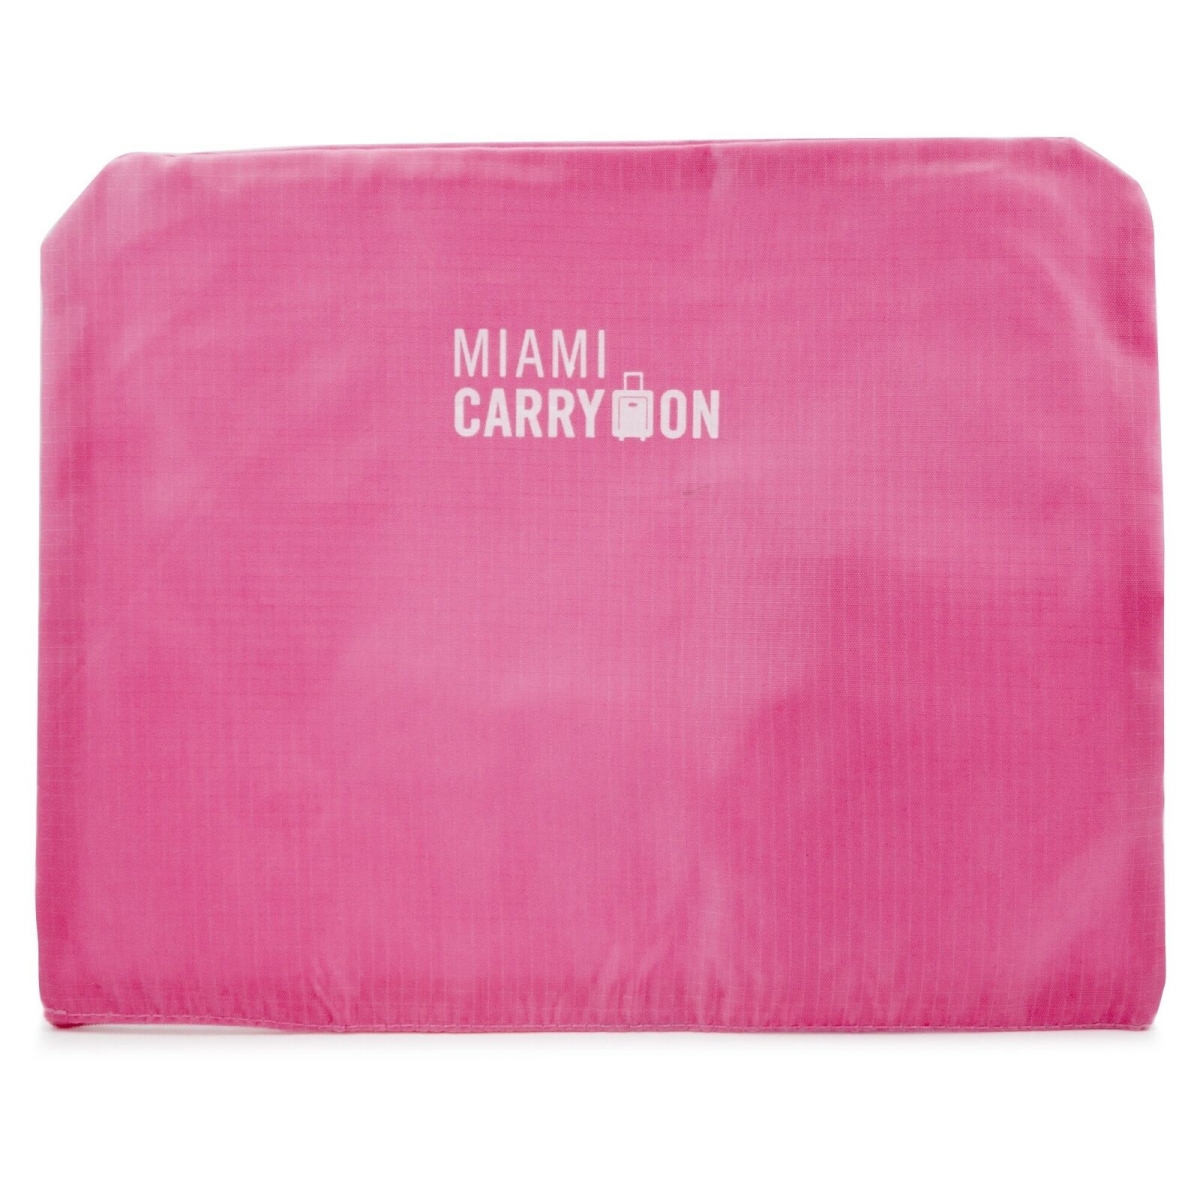 Picture of Miami CarryOn TL6SBGPK Packing Cubes Travelers&apos; Luggage Organizer Kit (Pink)